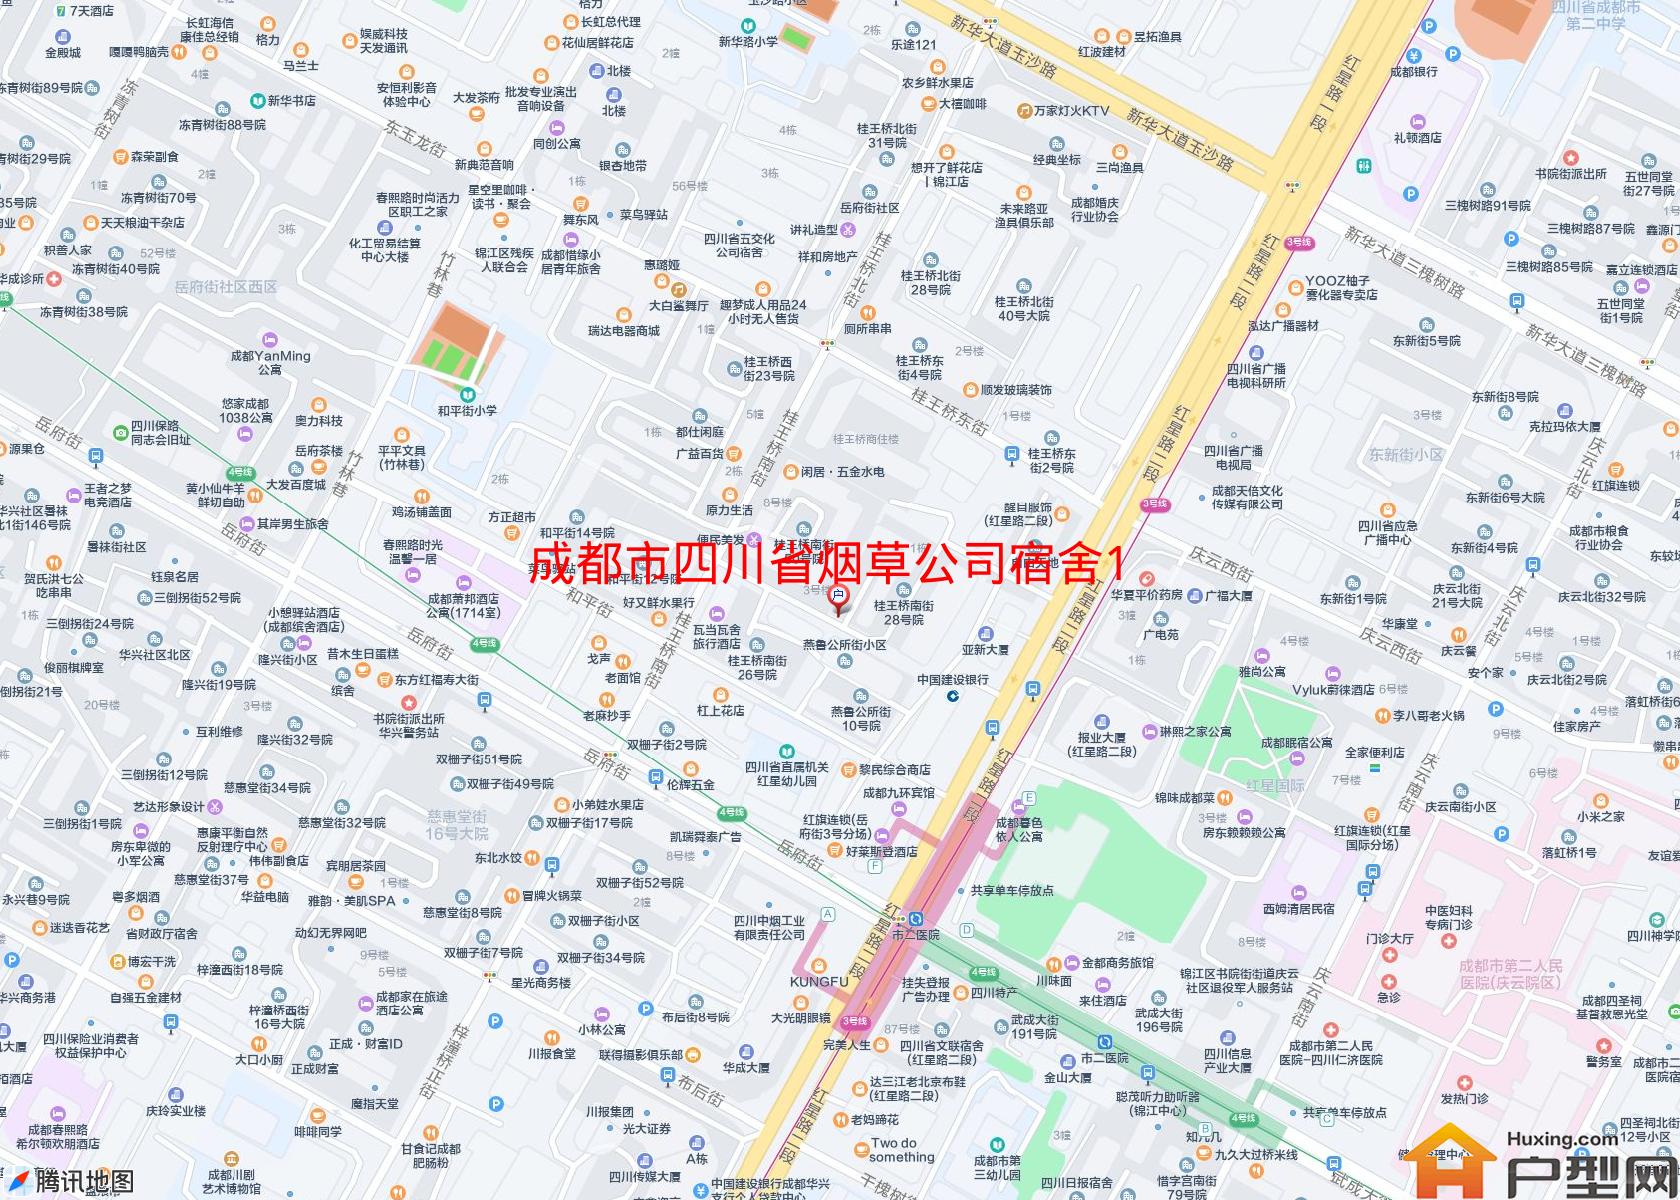 四川省烟草公司宿舍1幢小区 - 户型网